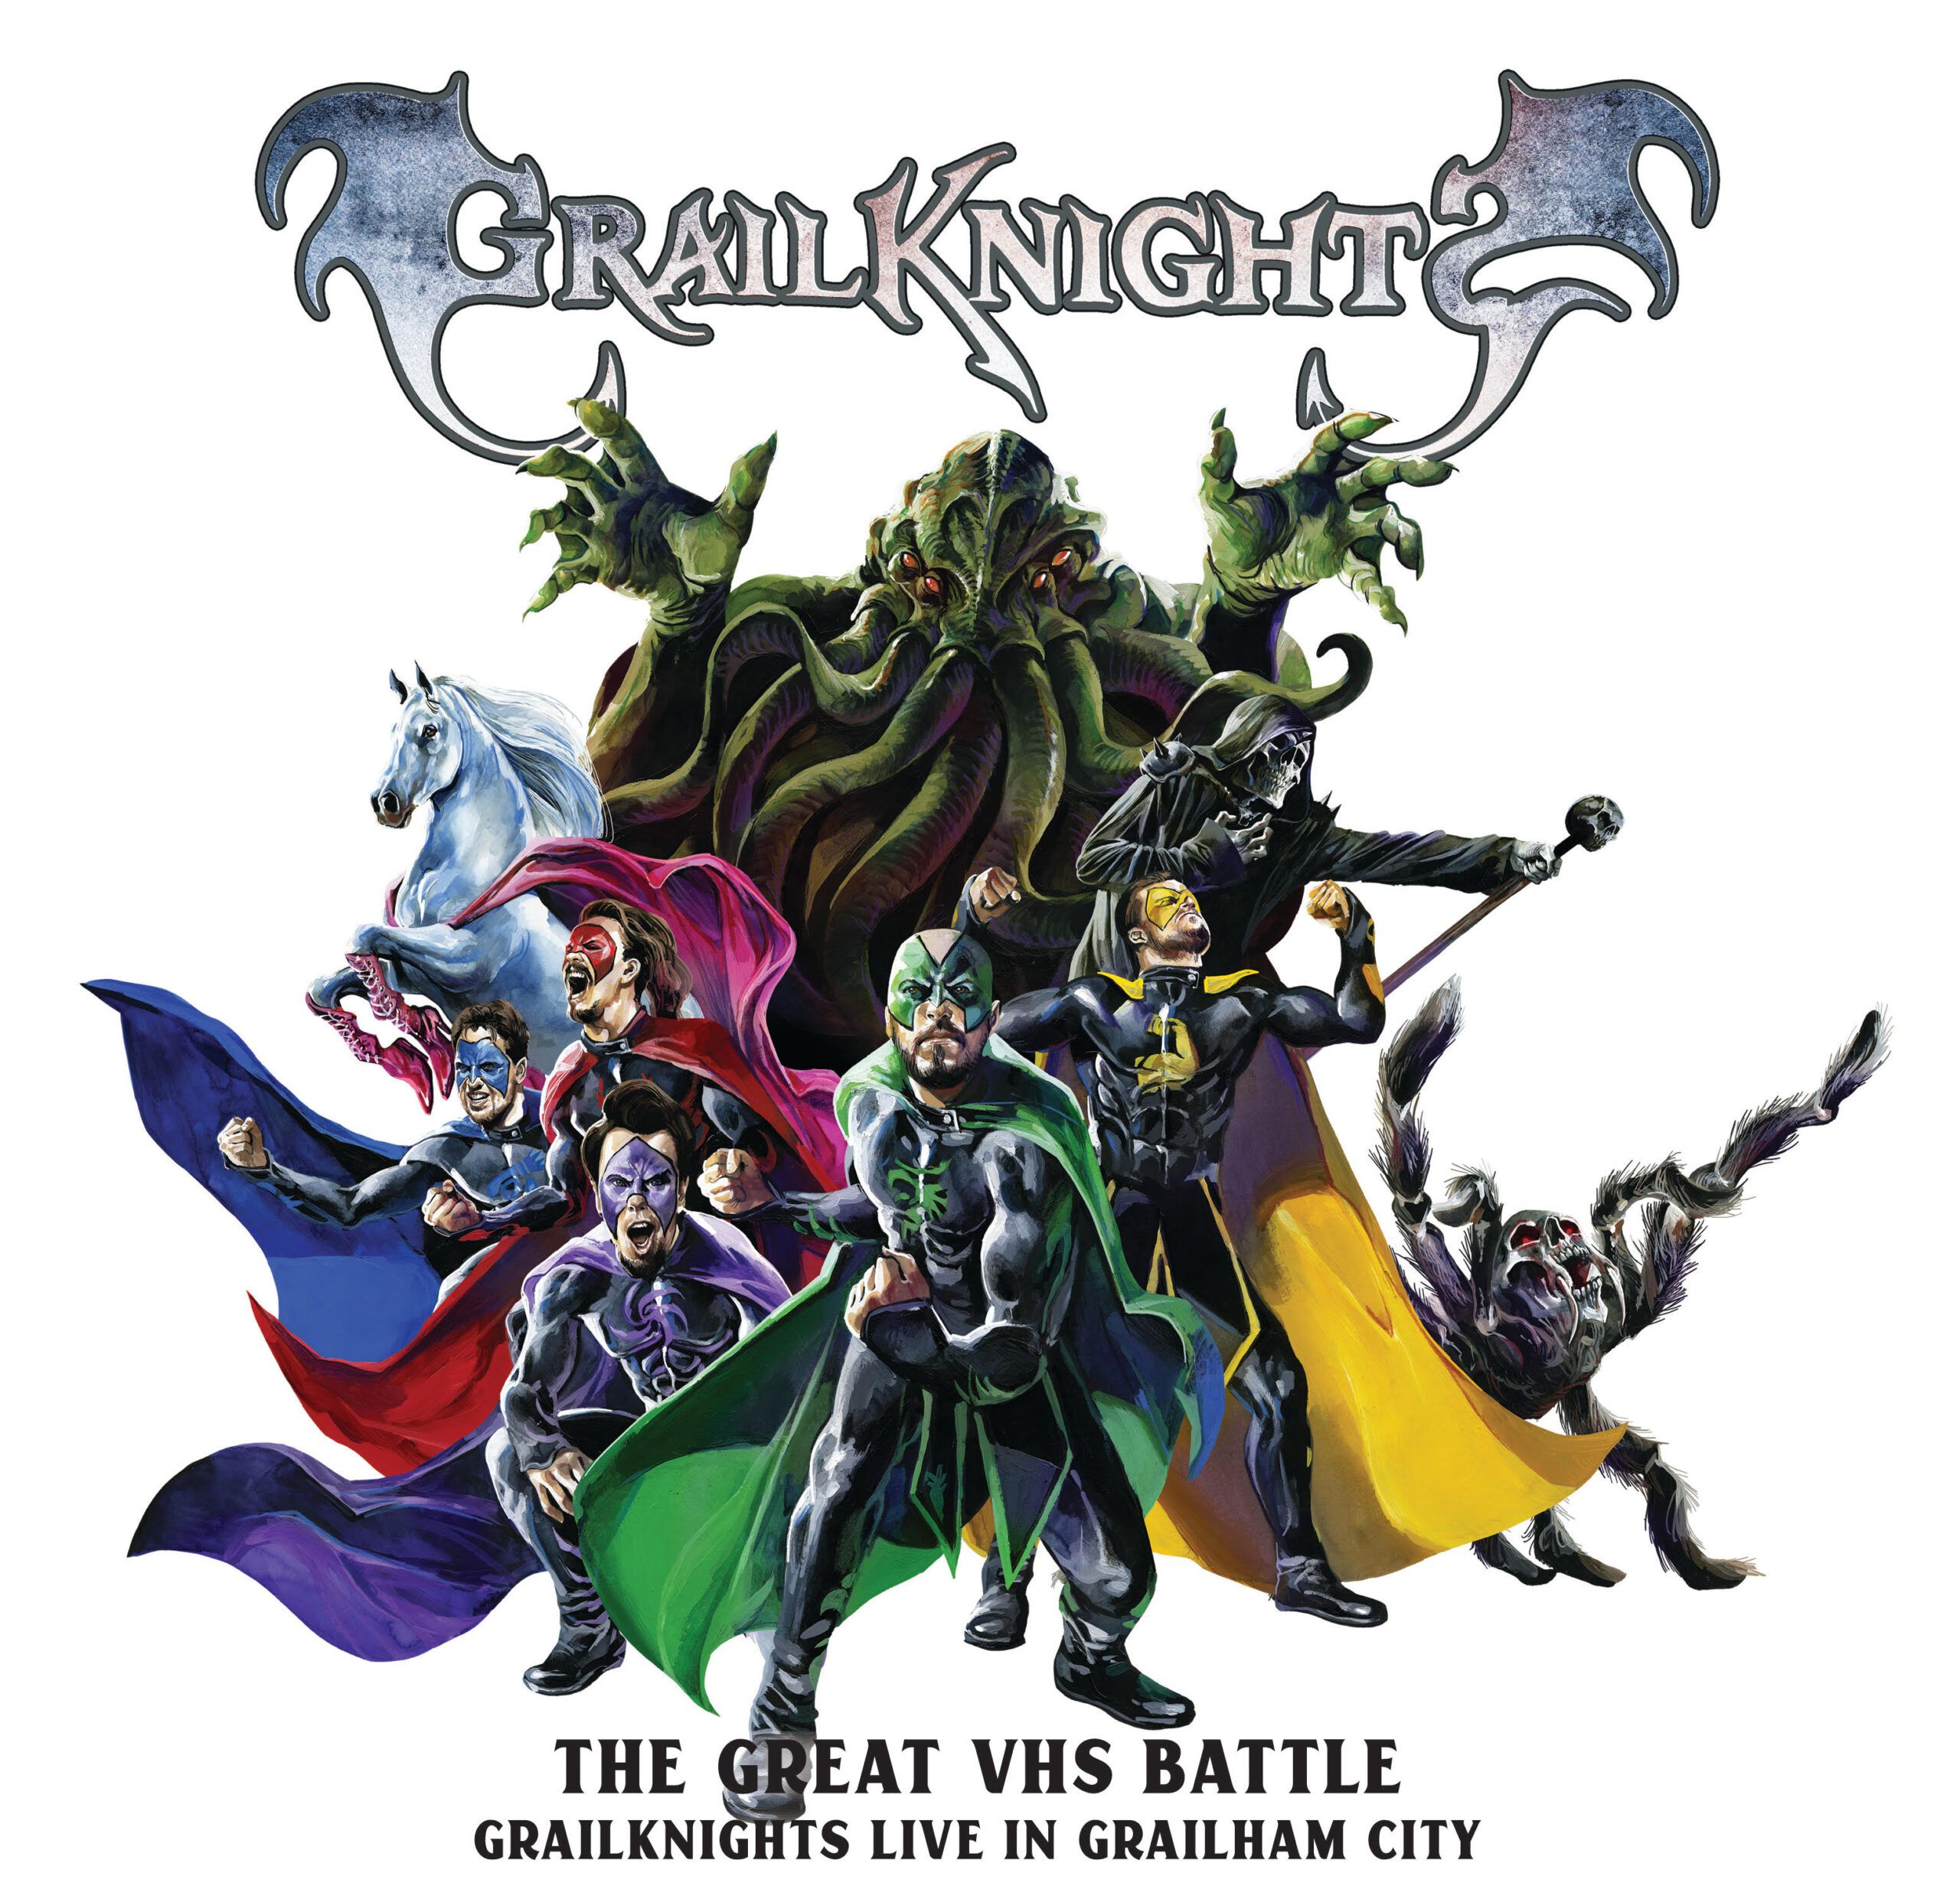 "The Great VHS Battle - Grailknights Live in Grailham City"-DVD/CD erscheint im November